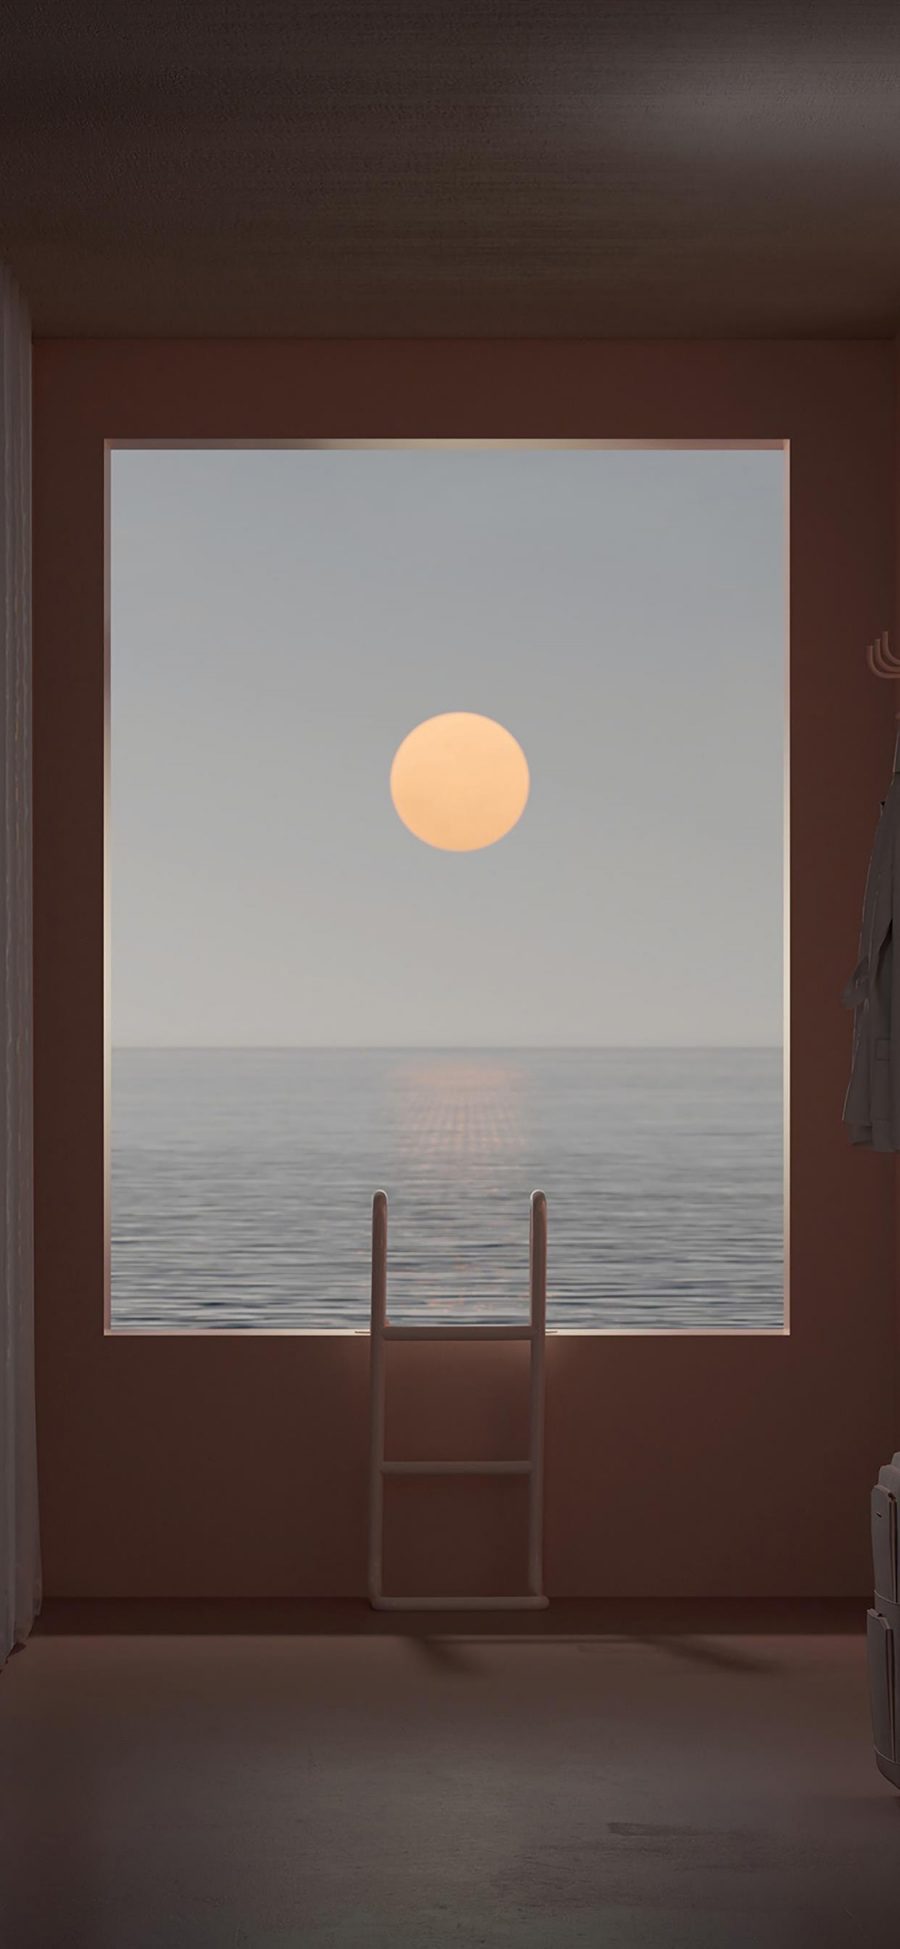 [2436×1125]大海 太阳 梯子 窗户 窗外 苹果手机壁纸图片